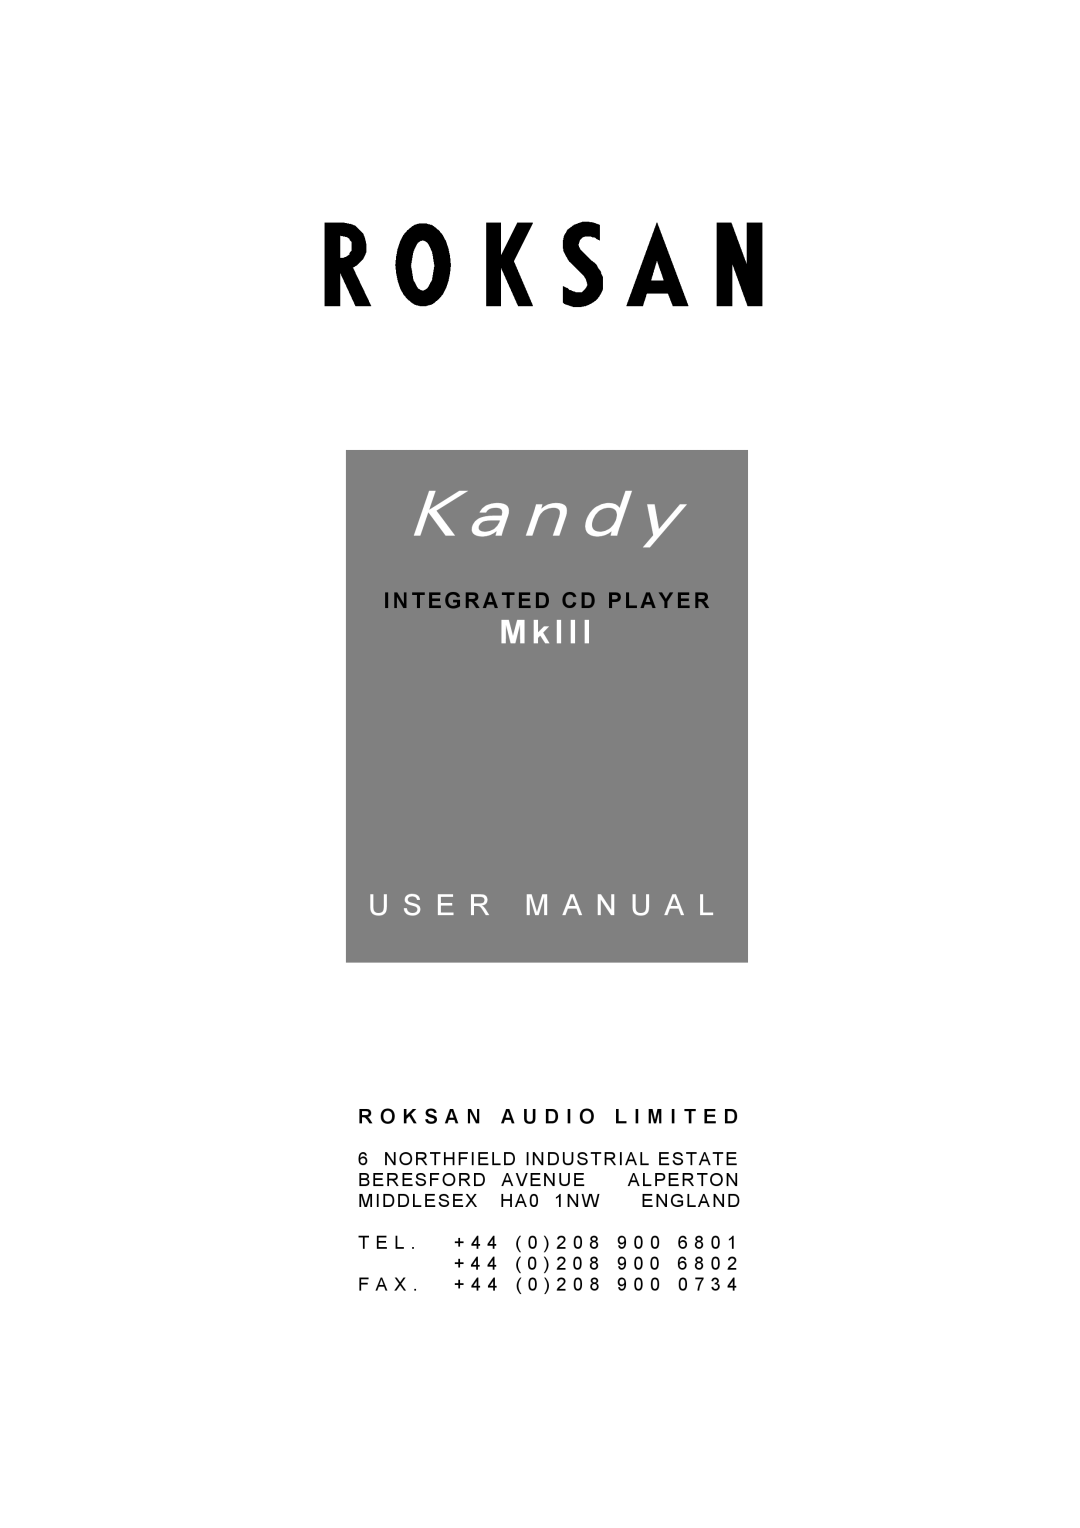 Roksan Audio Kandy MkIII user manual Integrated Cd Player, R O K S A N A U D I O L I M I T E D, K a n d y, M k 